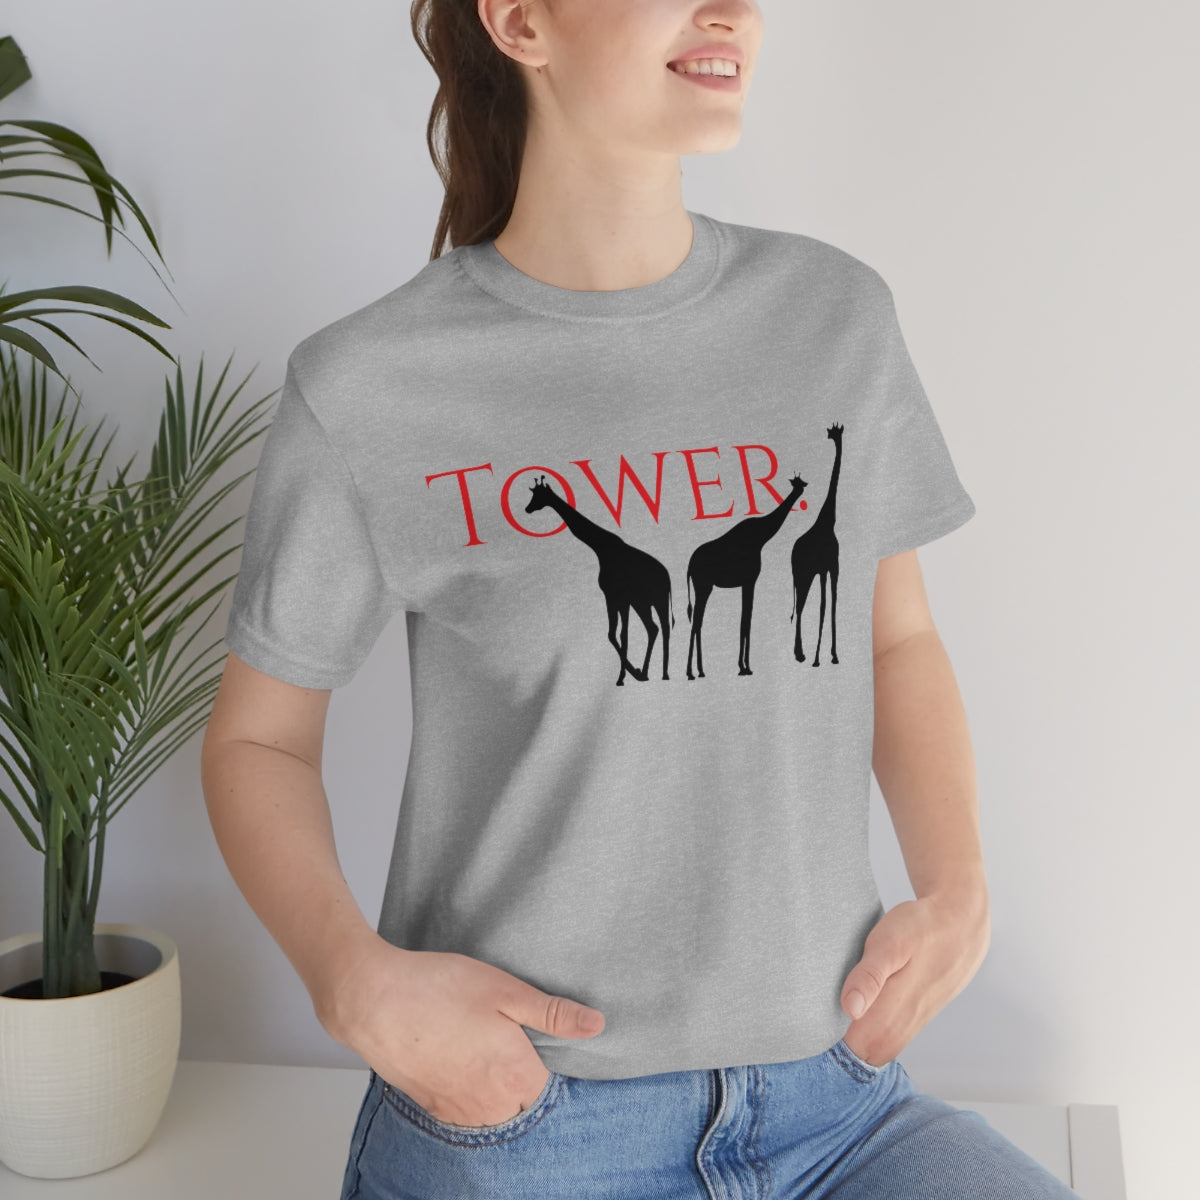 Tower of Giraffe T-shirt